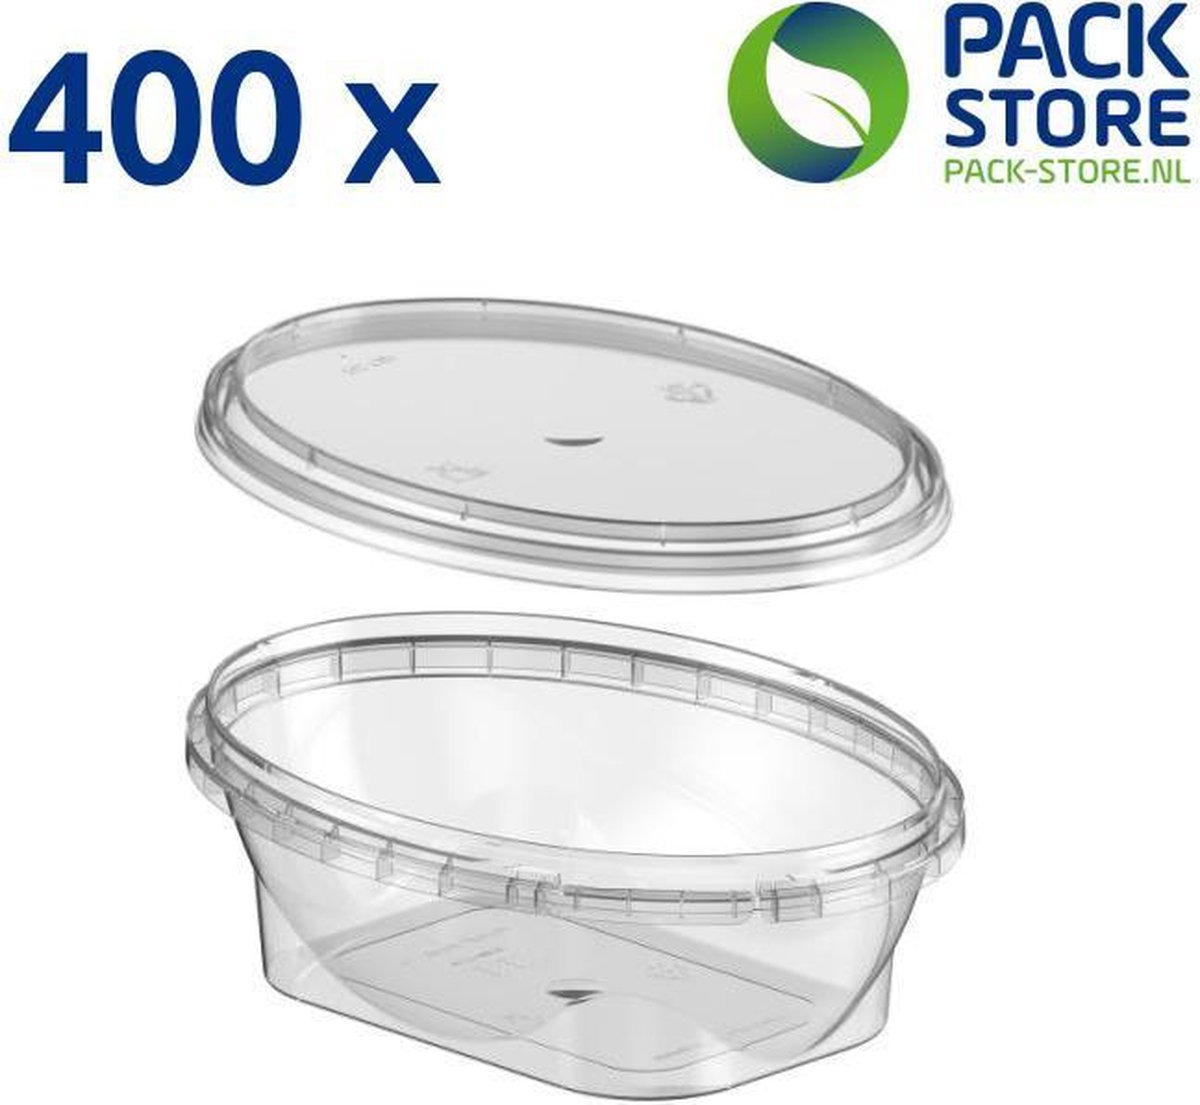 400 x ovale plastic bakjes met deksel - 250 ml - vershoudbakjes - meal prep bakjes - transparant - geschikt voor diepvries, magnetron en vaatwasser - Nederlandse producent